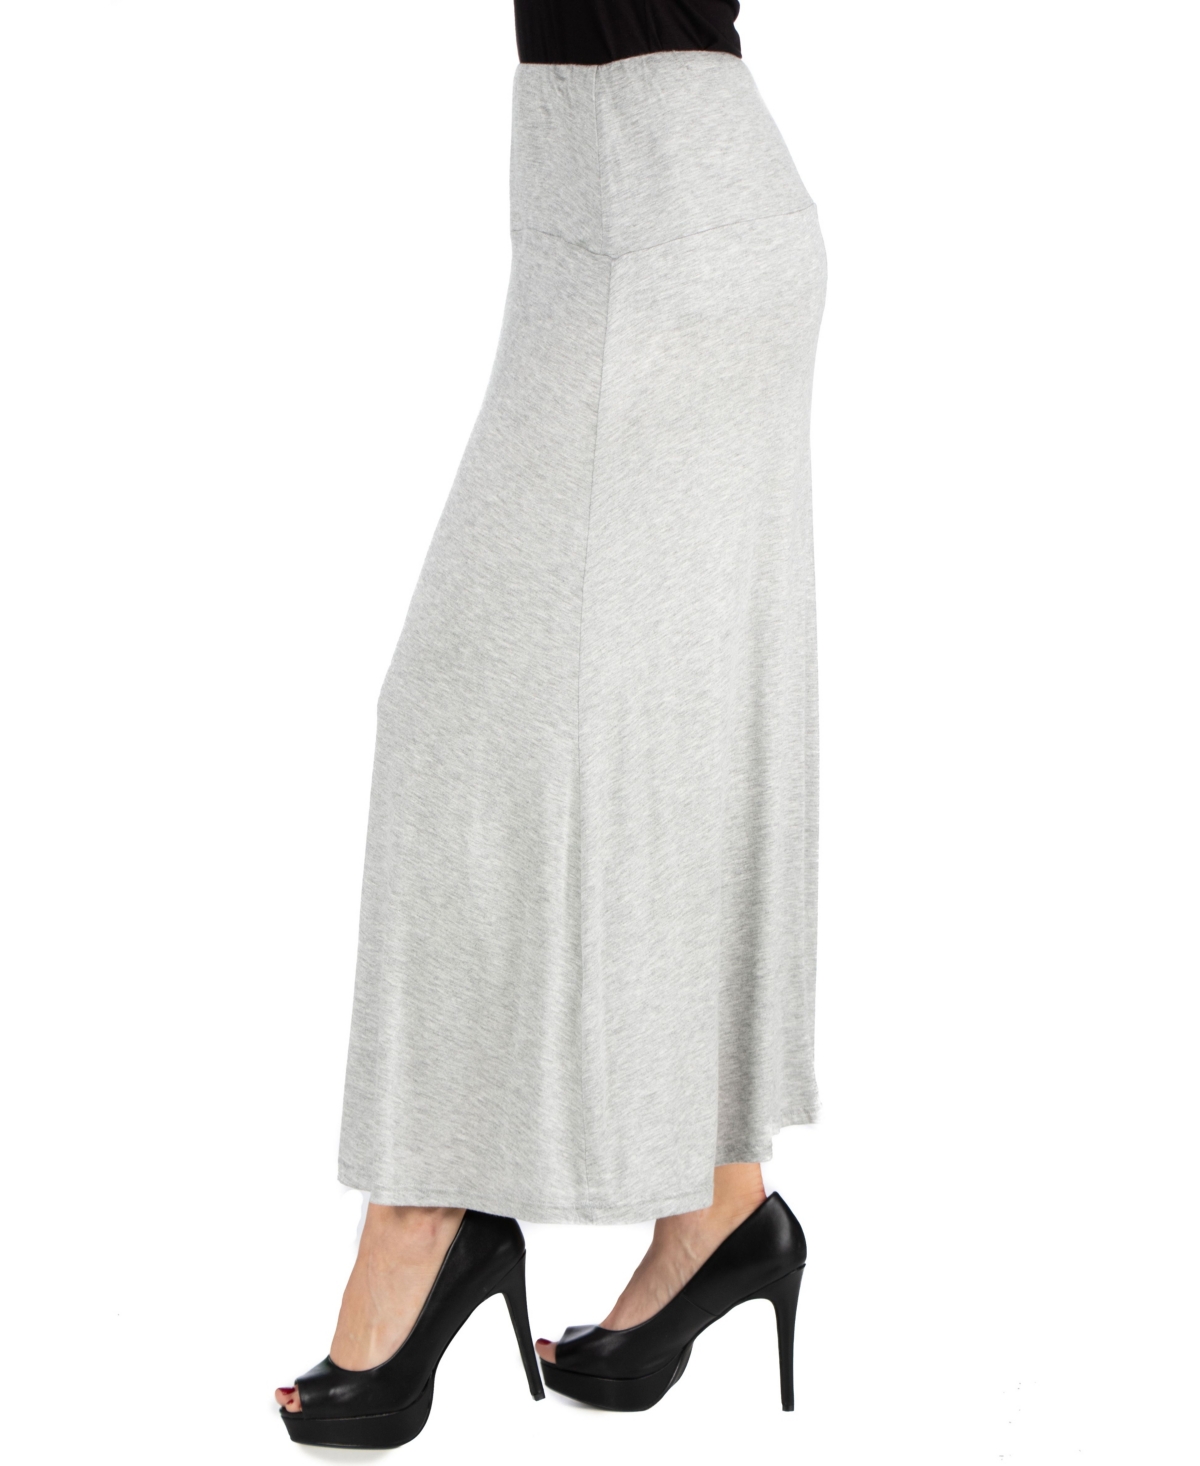 Plus Size Elastic Waist Maxi Skirt - White